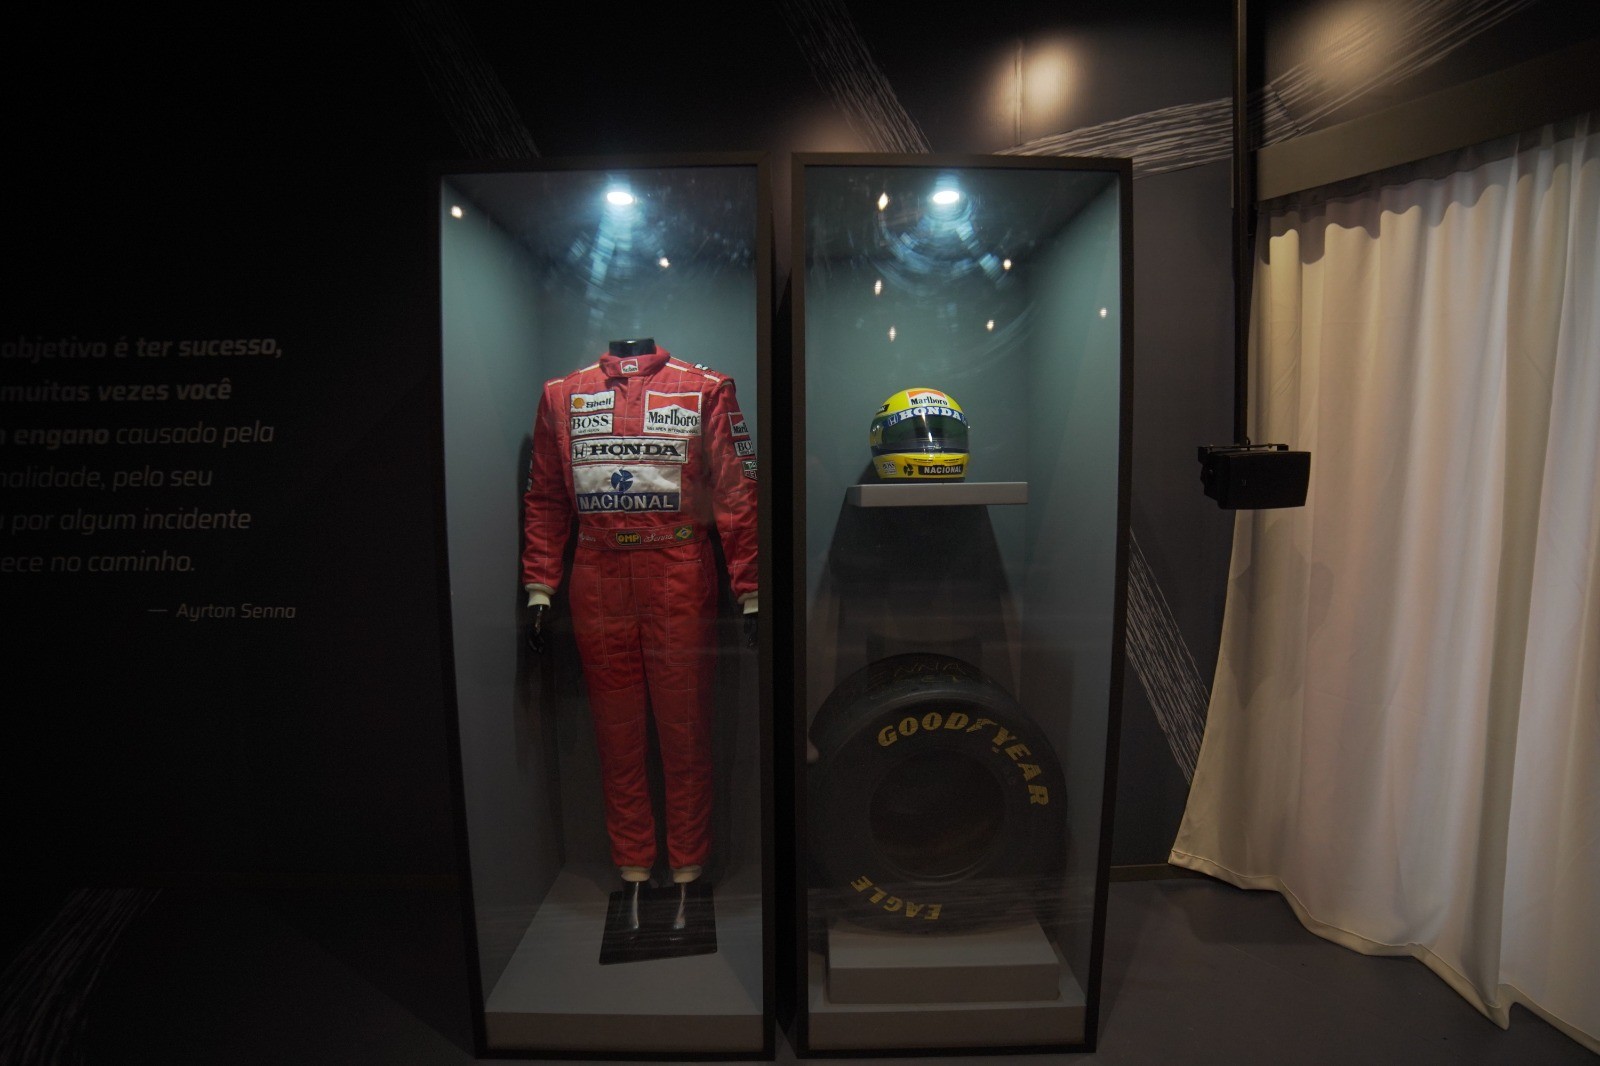 Mostra 'Eu, Ayrton Senna da Silva' reúne objetos usados pelo piloto, com seu uniforme, capacete e até uma roda de kart — Foto: Divulgação/YDreams